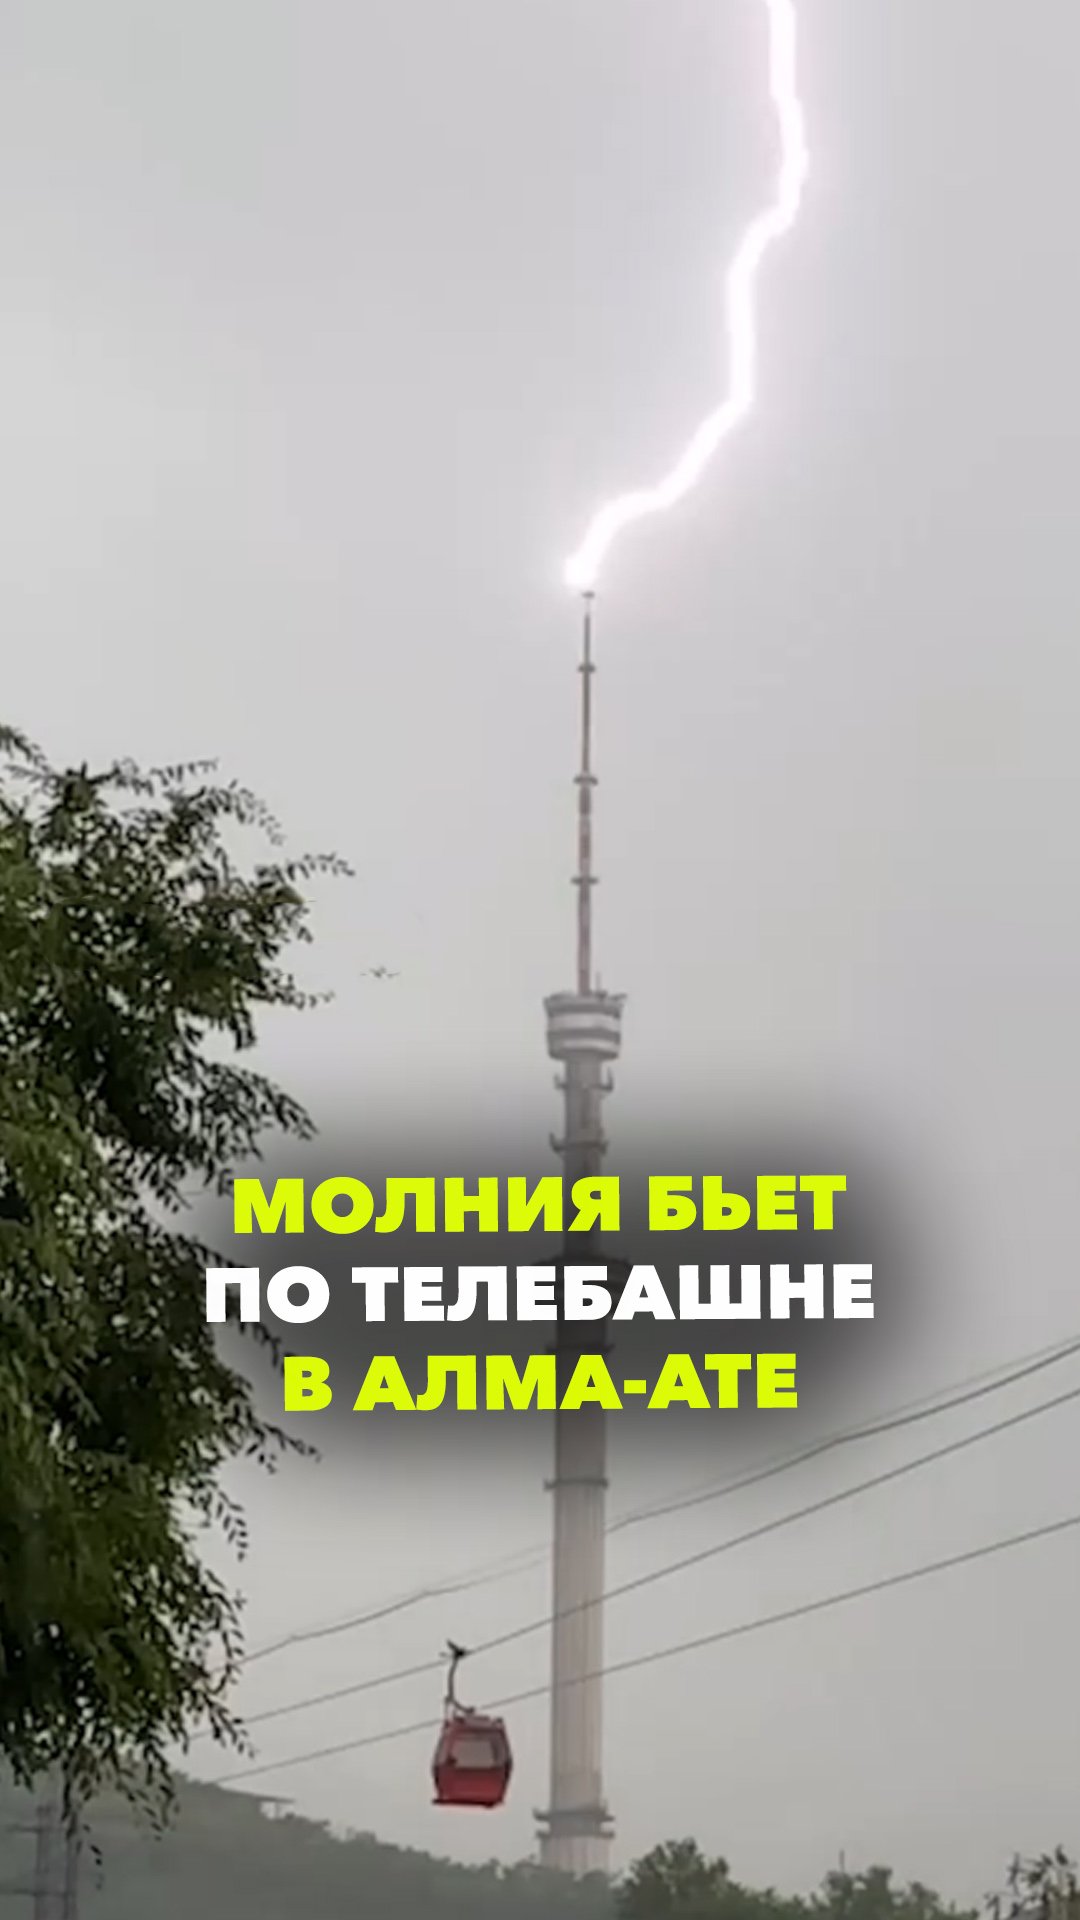 Удары молнии попали прямо по телебашне в Алма-Ате. Жителей Казахстана напуган громкий звук